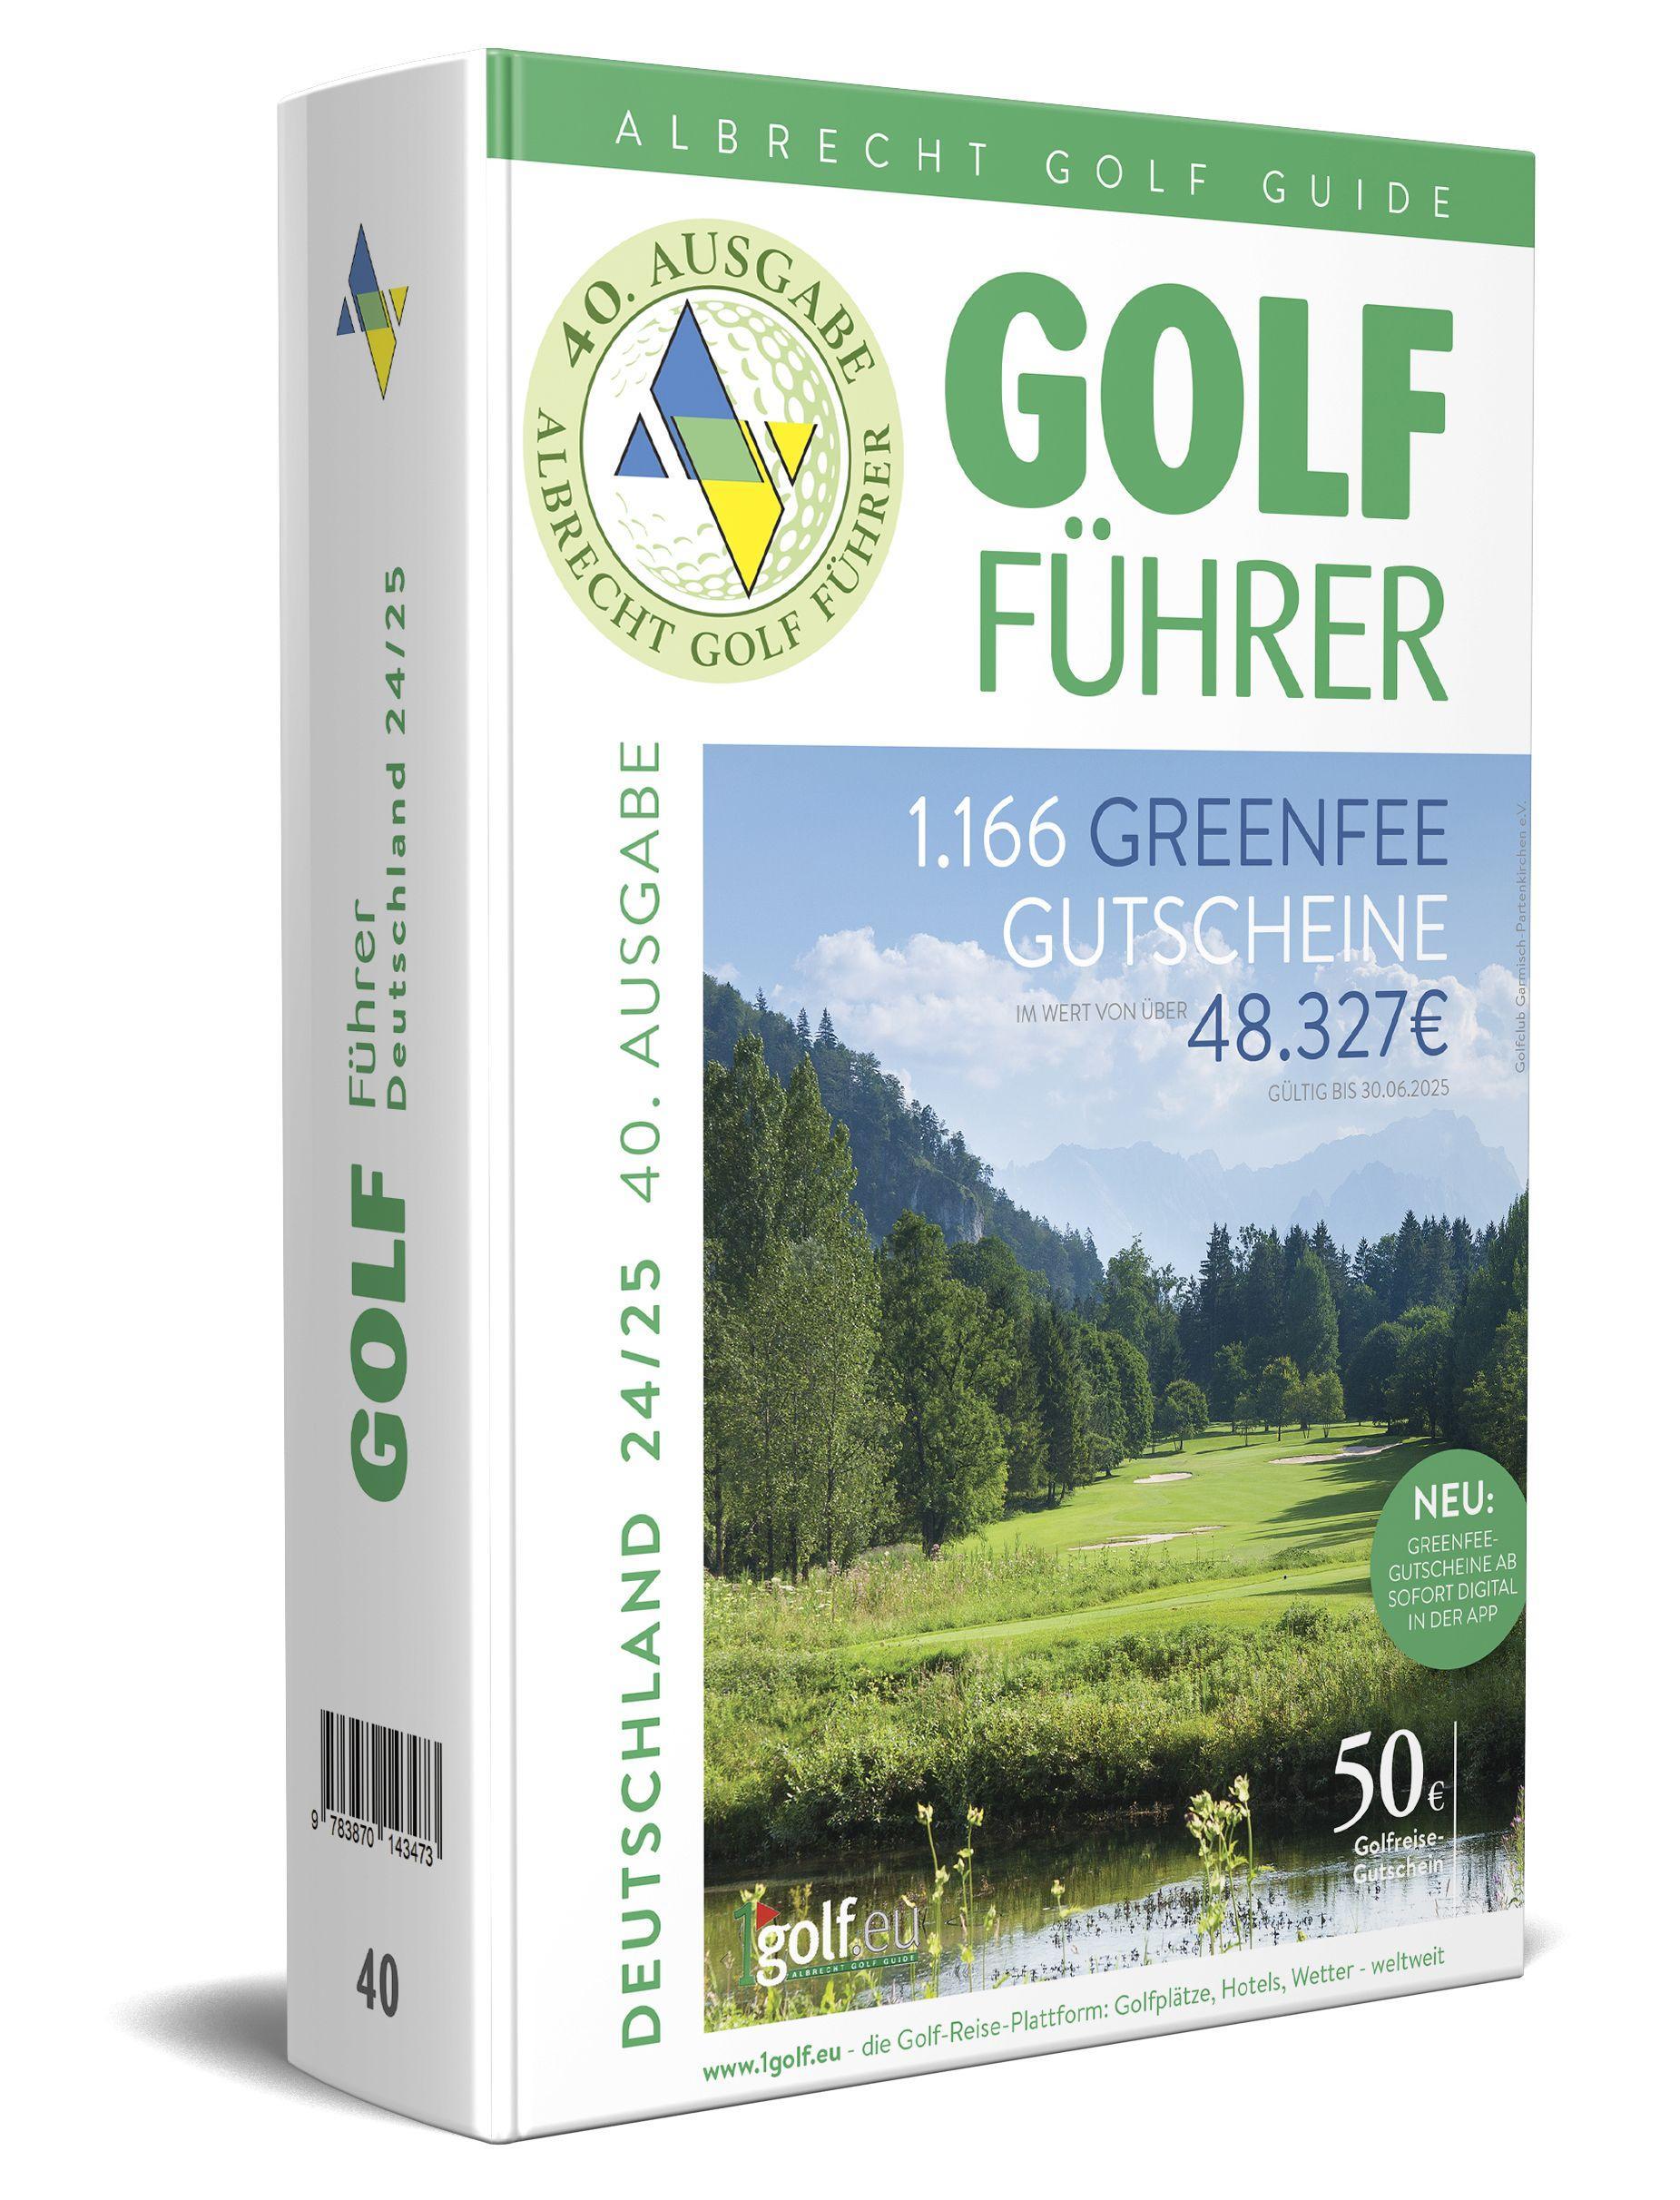 Albrecht Golf Führer Deutschland 24/25 inklusive Greenfee Gutscheinen Das ideale Geschenk für Golfer